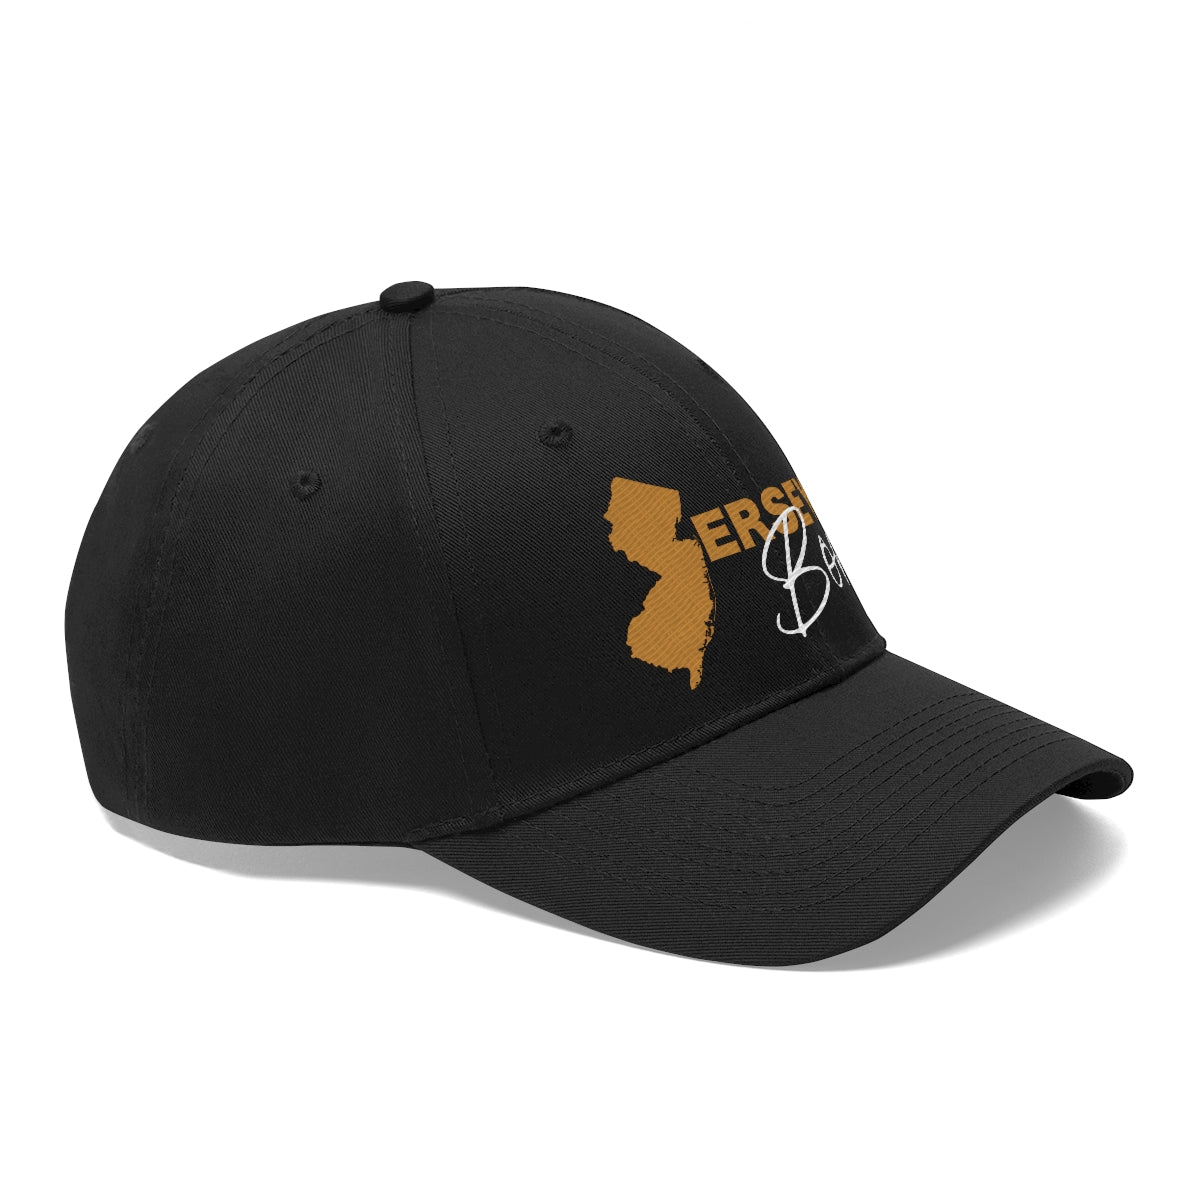 Jersey Born - Gold Scheme Twill Hat